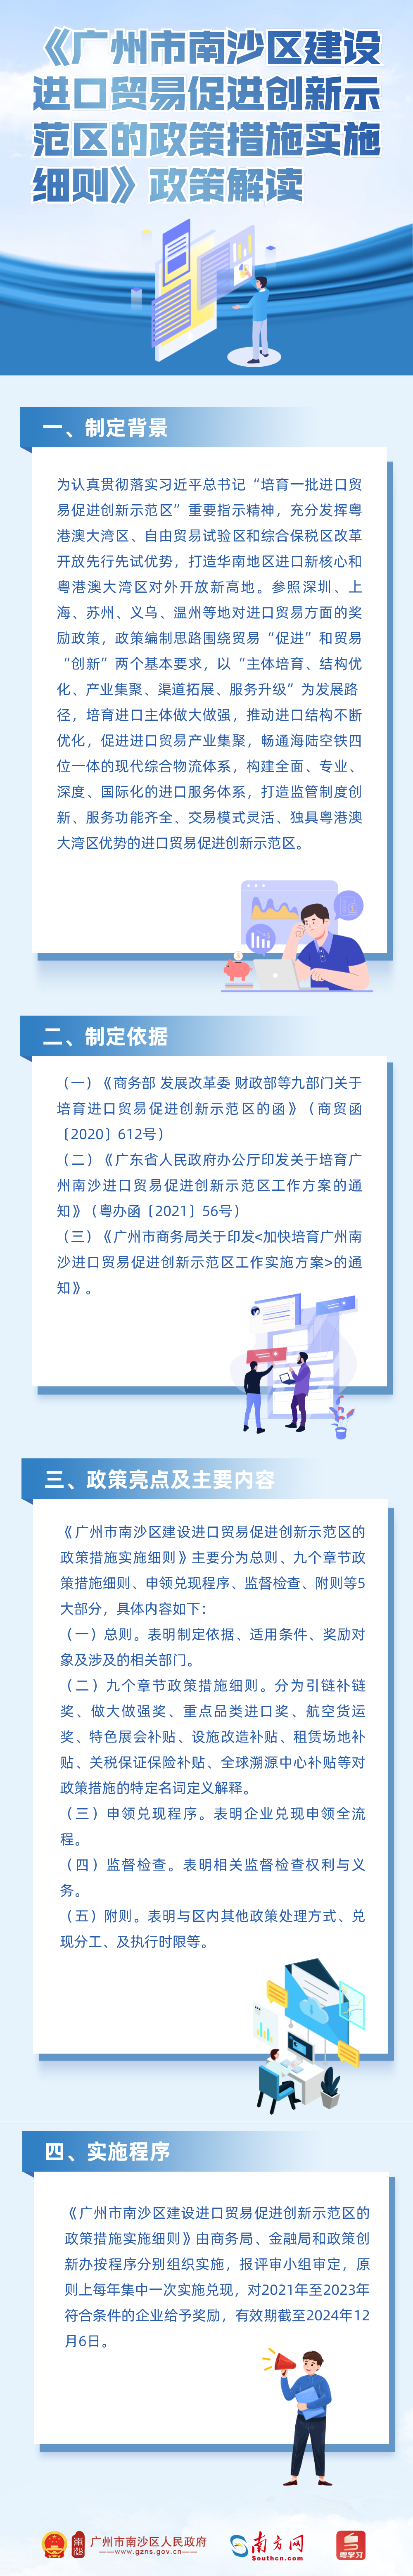 《广州市南沙区建设进口贸易促进创新示范区的政策措施实施细则》政策解读.png